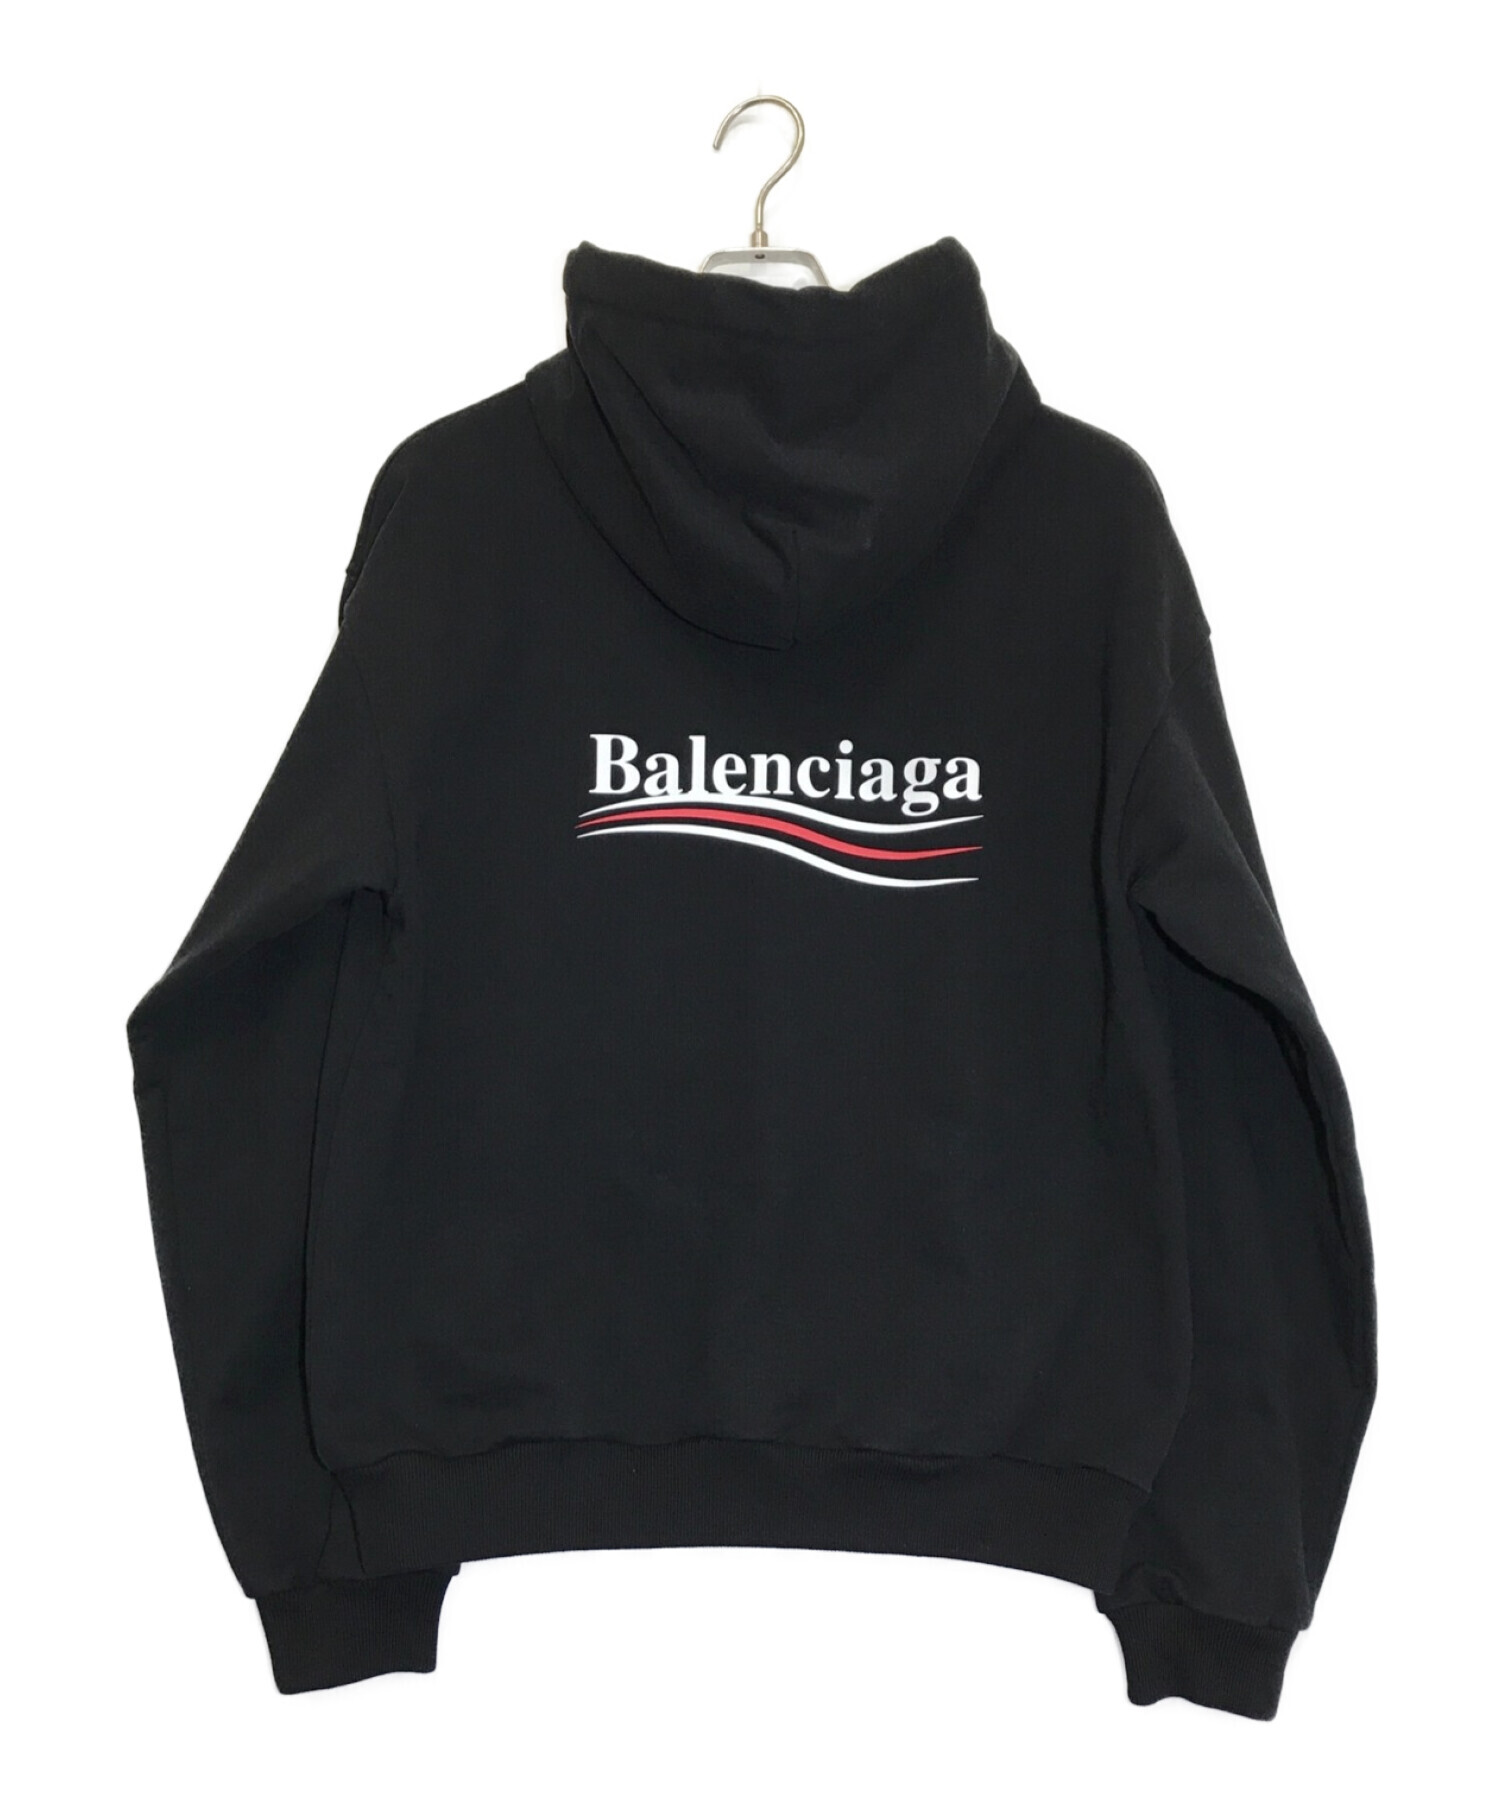 BALENCIAGA (バレンシアガ) キャンペーンロゴフーディーパーカー ブラック サイズ:M